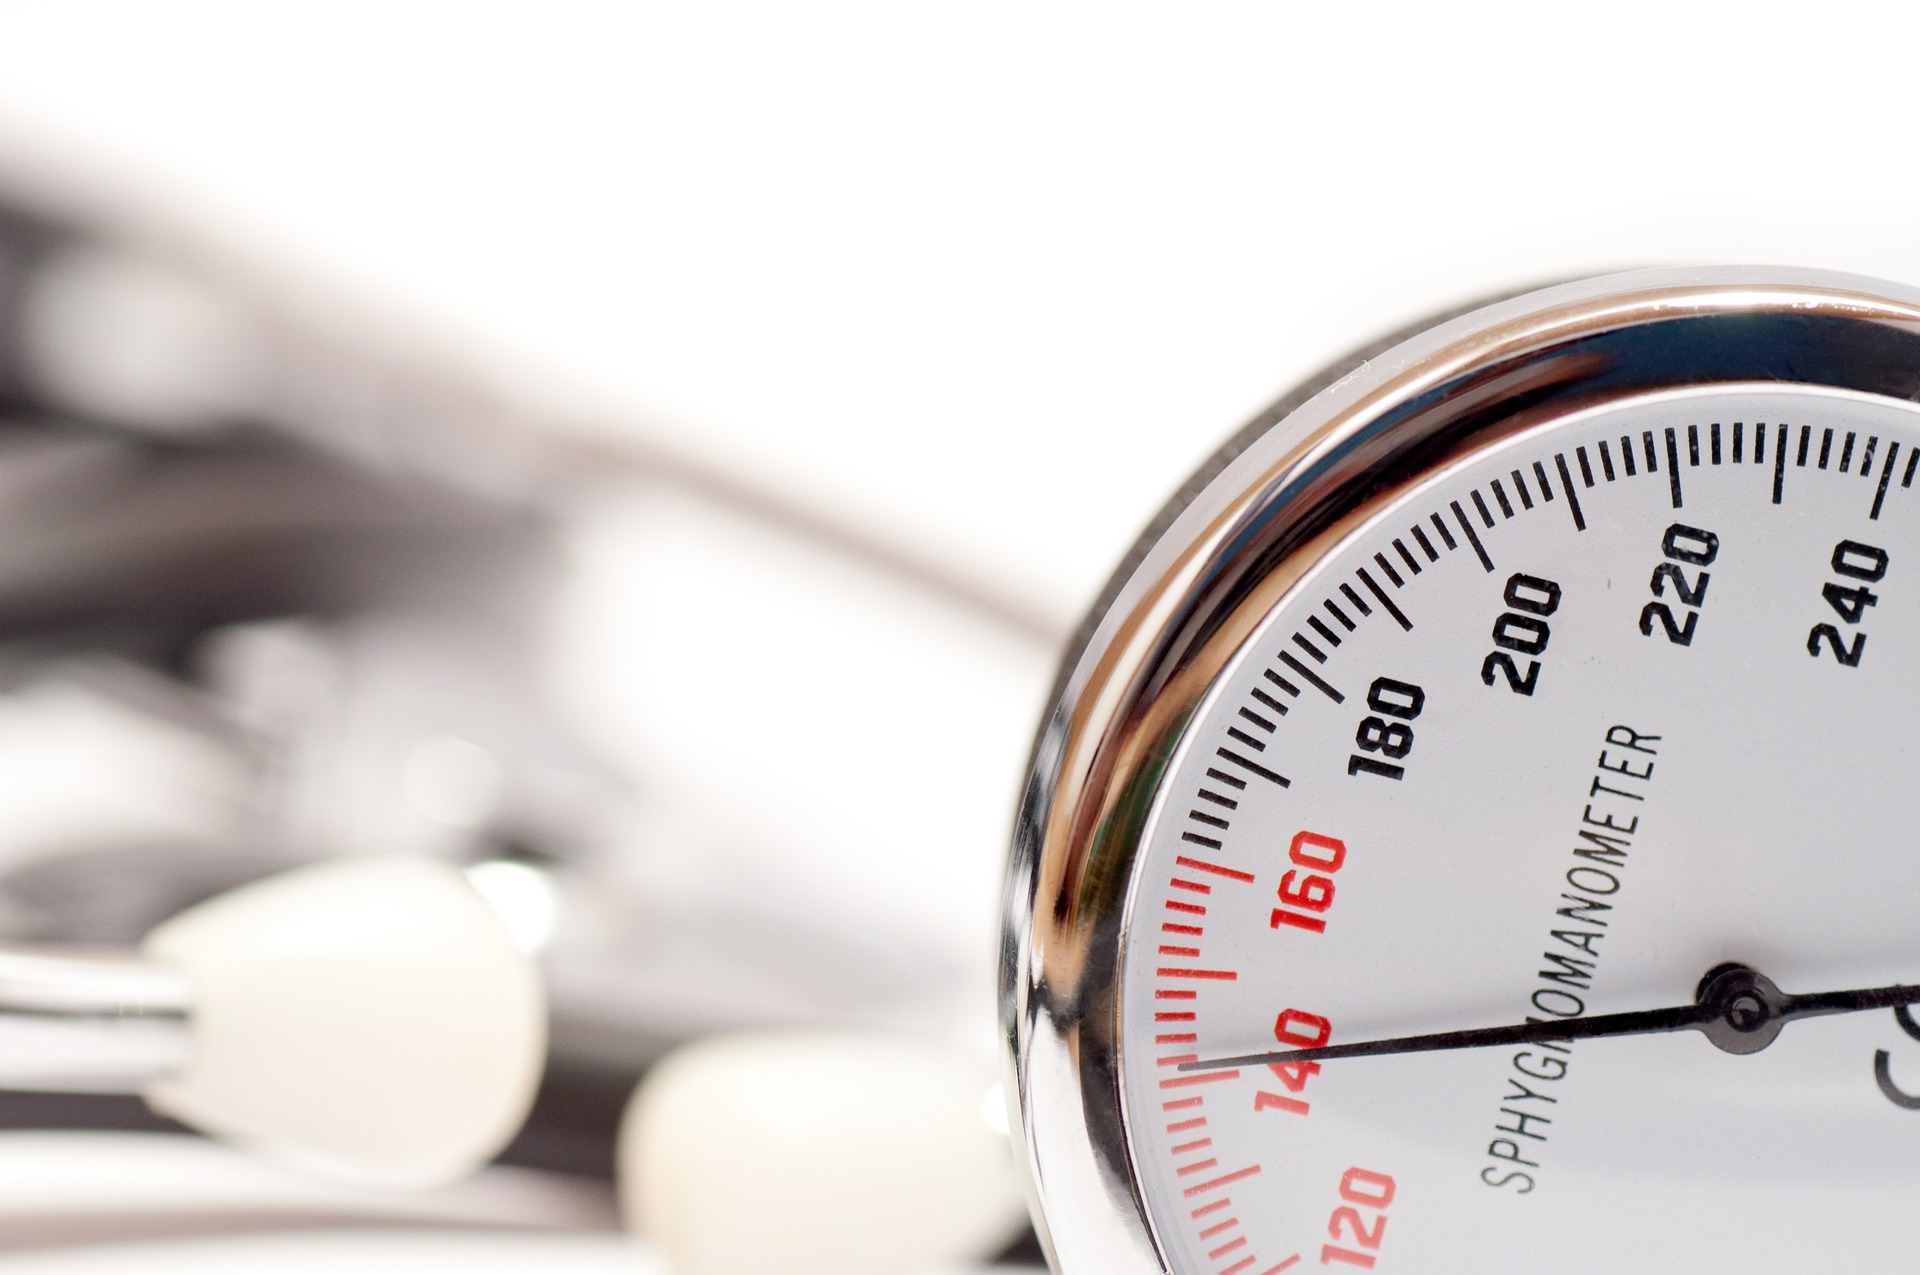 Magas vérnyomás: kevésbé ismert rizikófaktorok